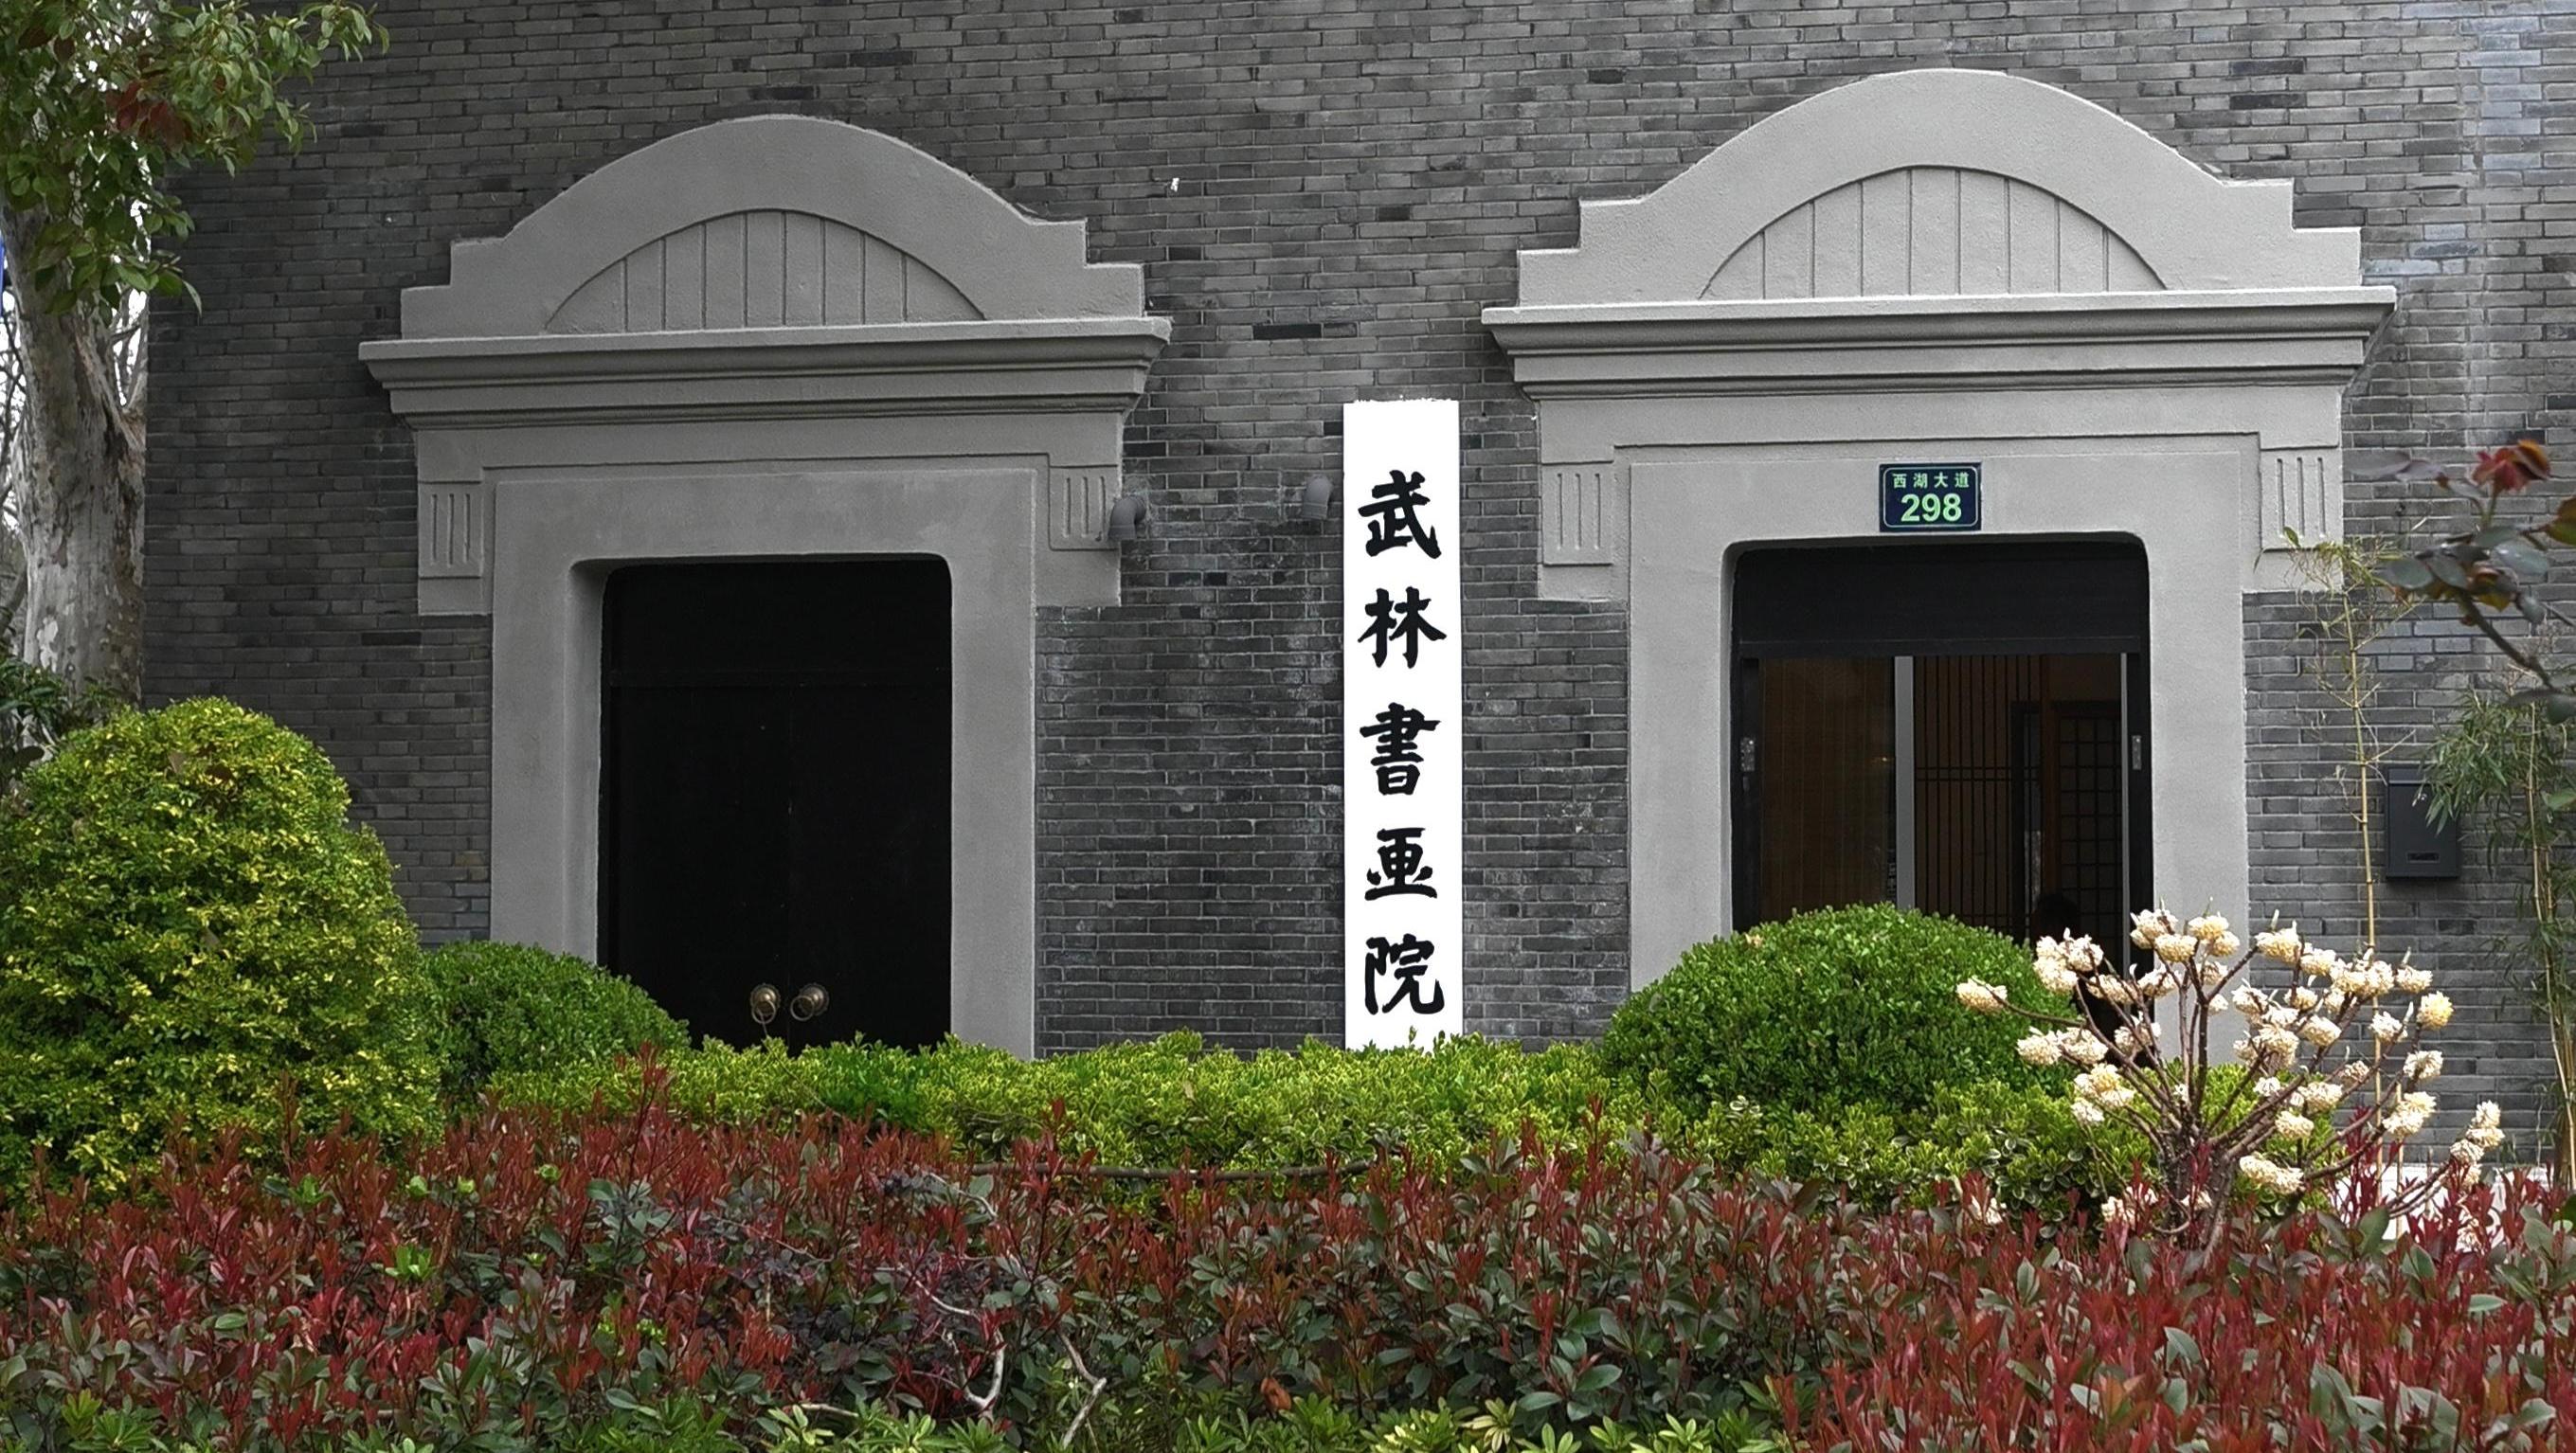 武林书画院建筑修缮后恢复开放